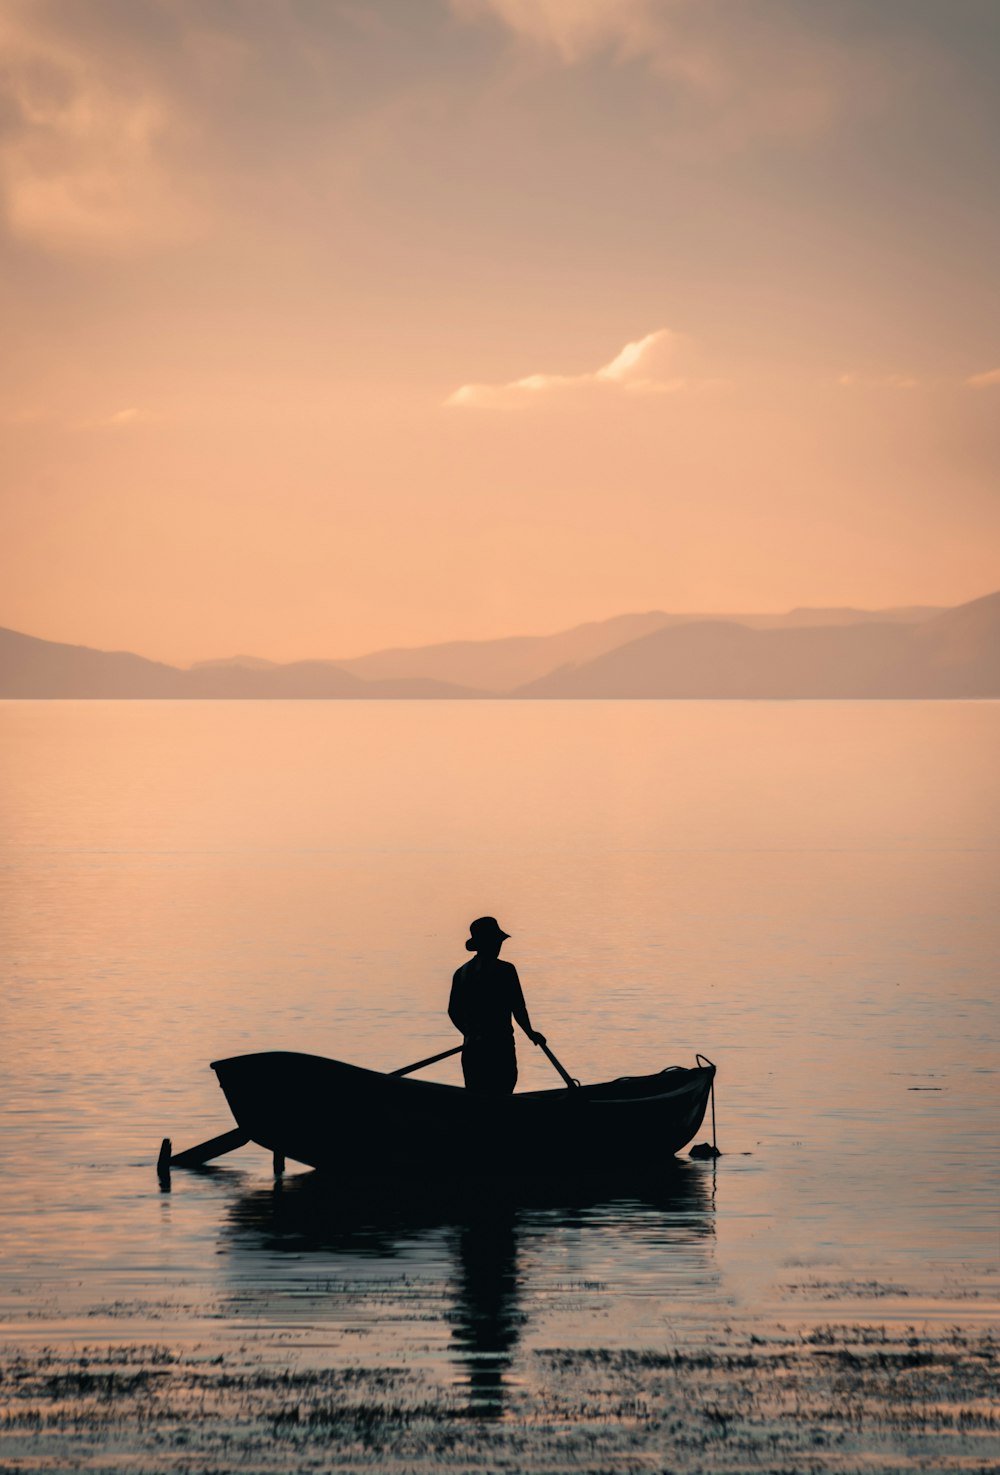 man in boat on lake during daytime